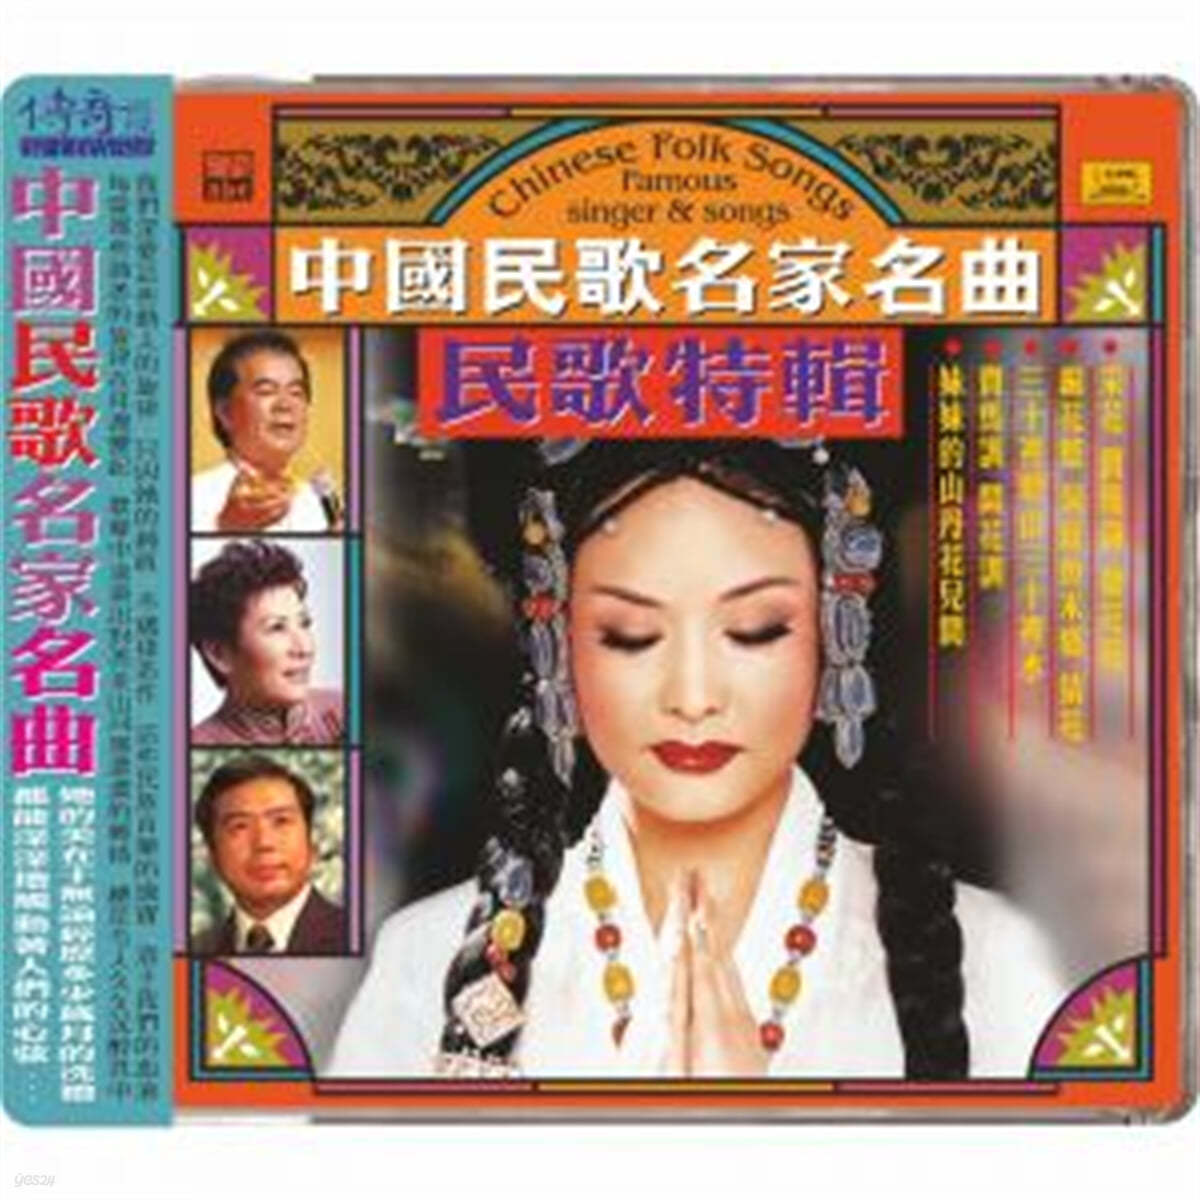 60-80년대 중국 전역 소수민족들의 민요집 (Chinese Folk Songs : Famous Singer & Songs) 